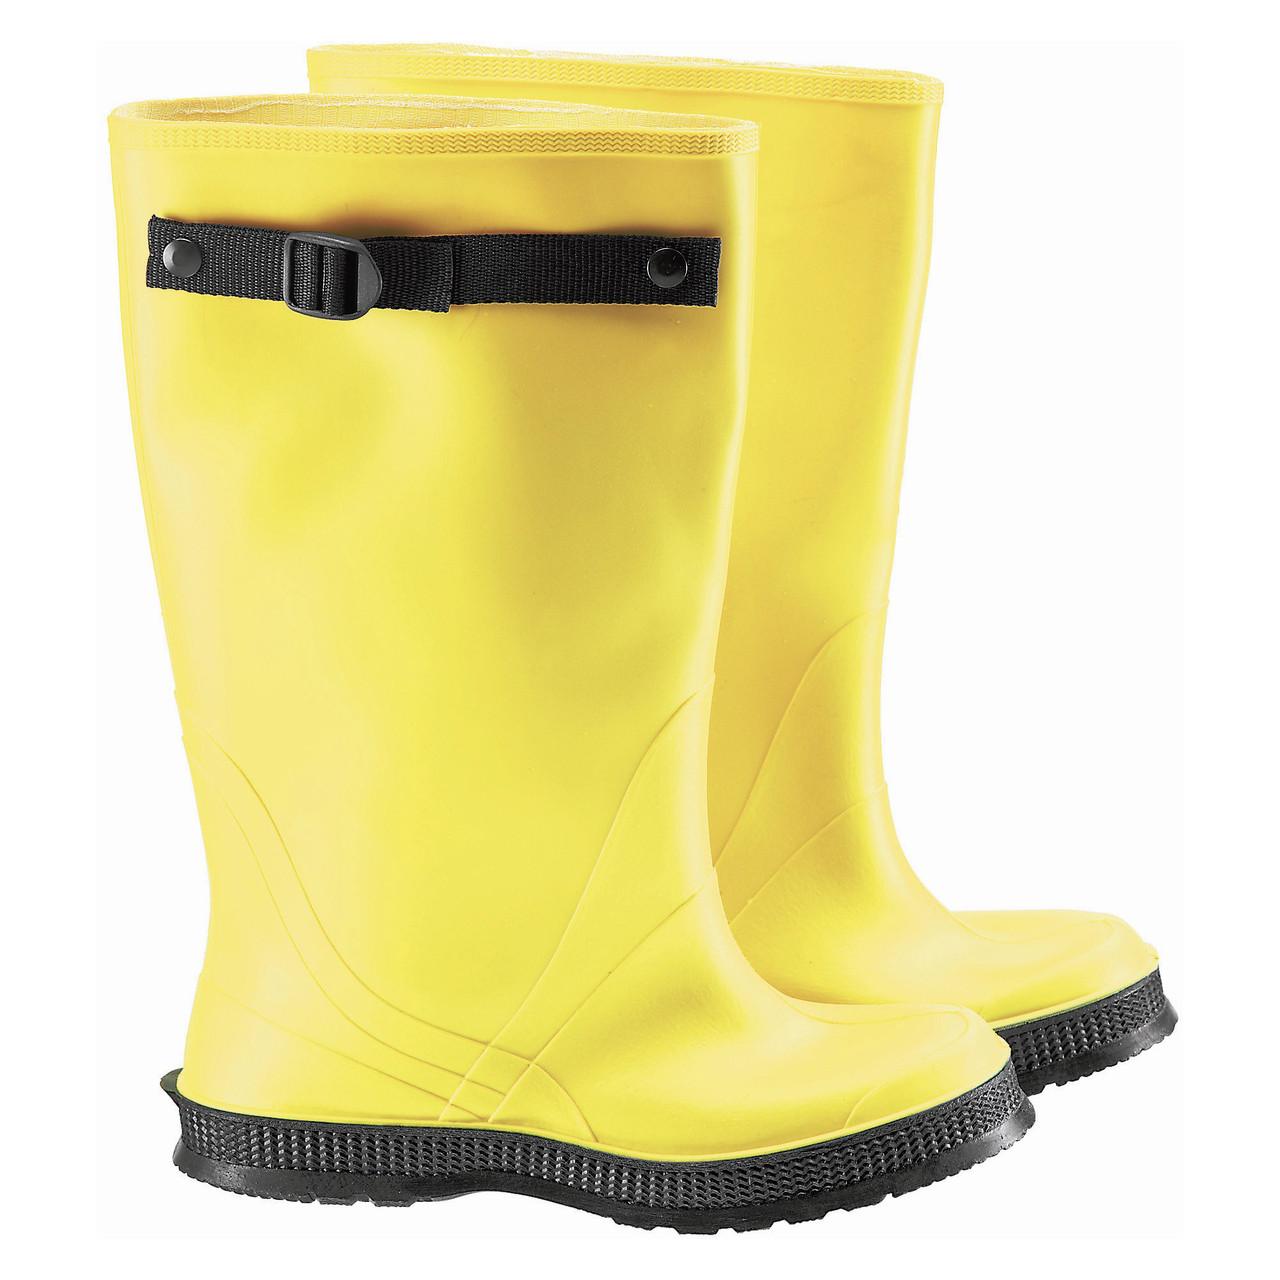 dunlop boots yellow